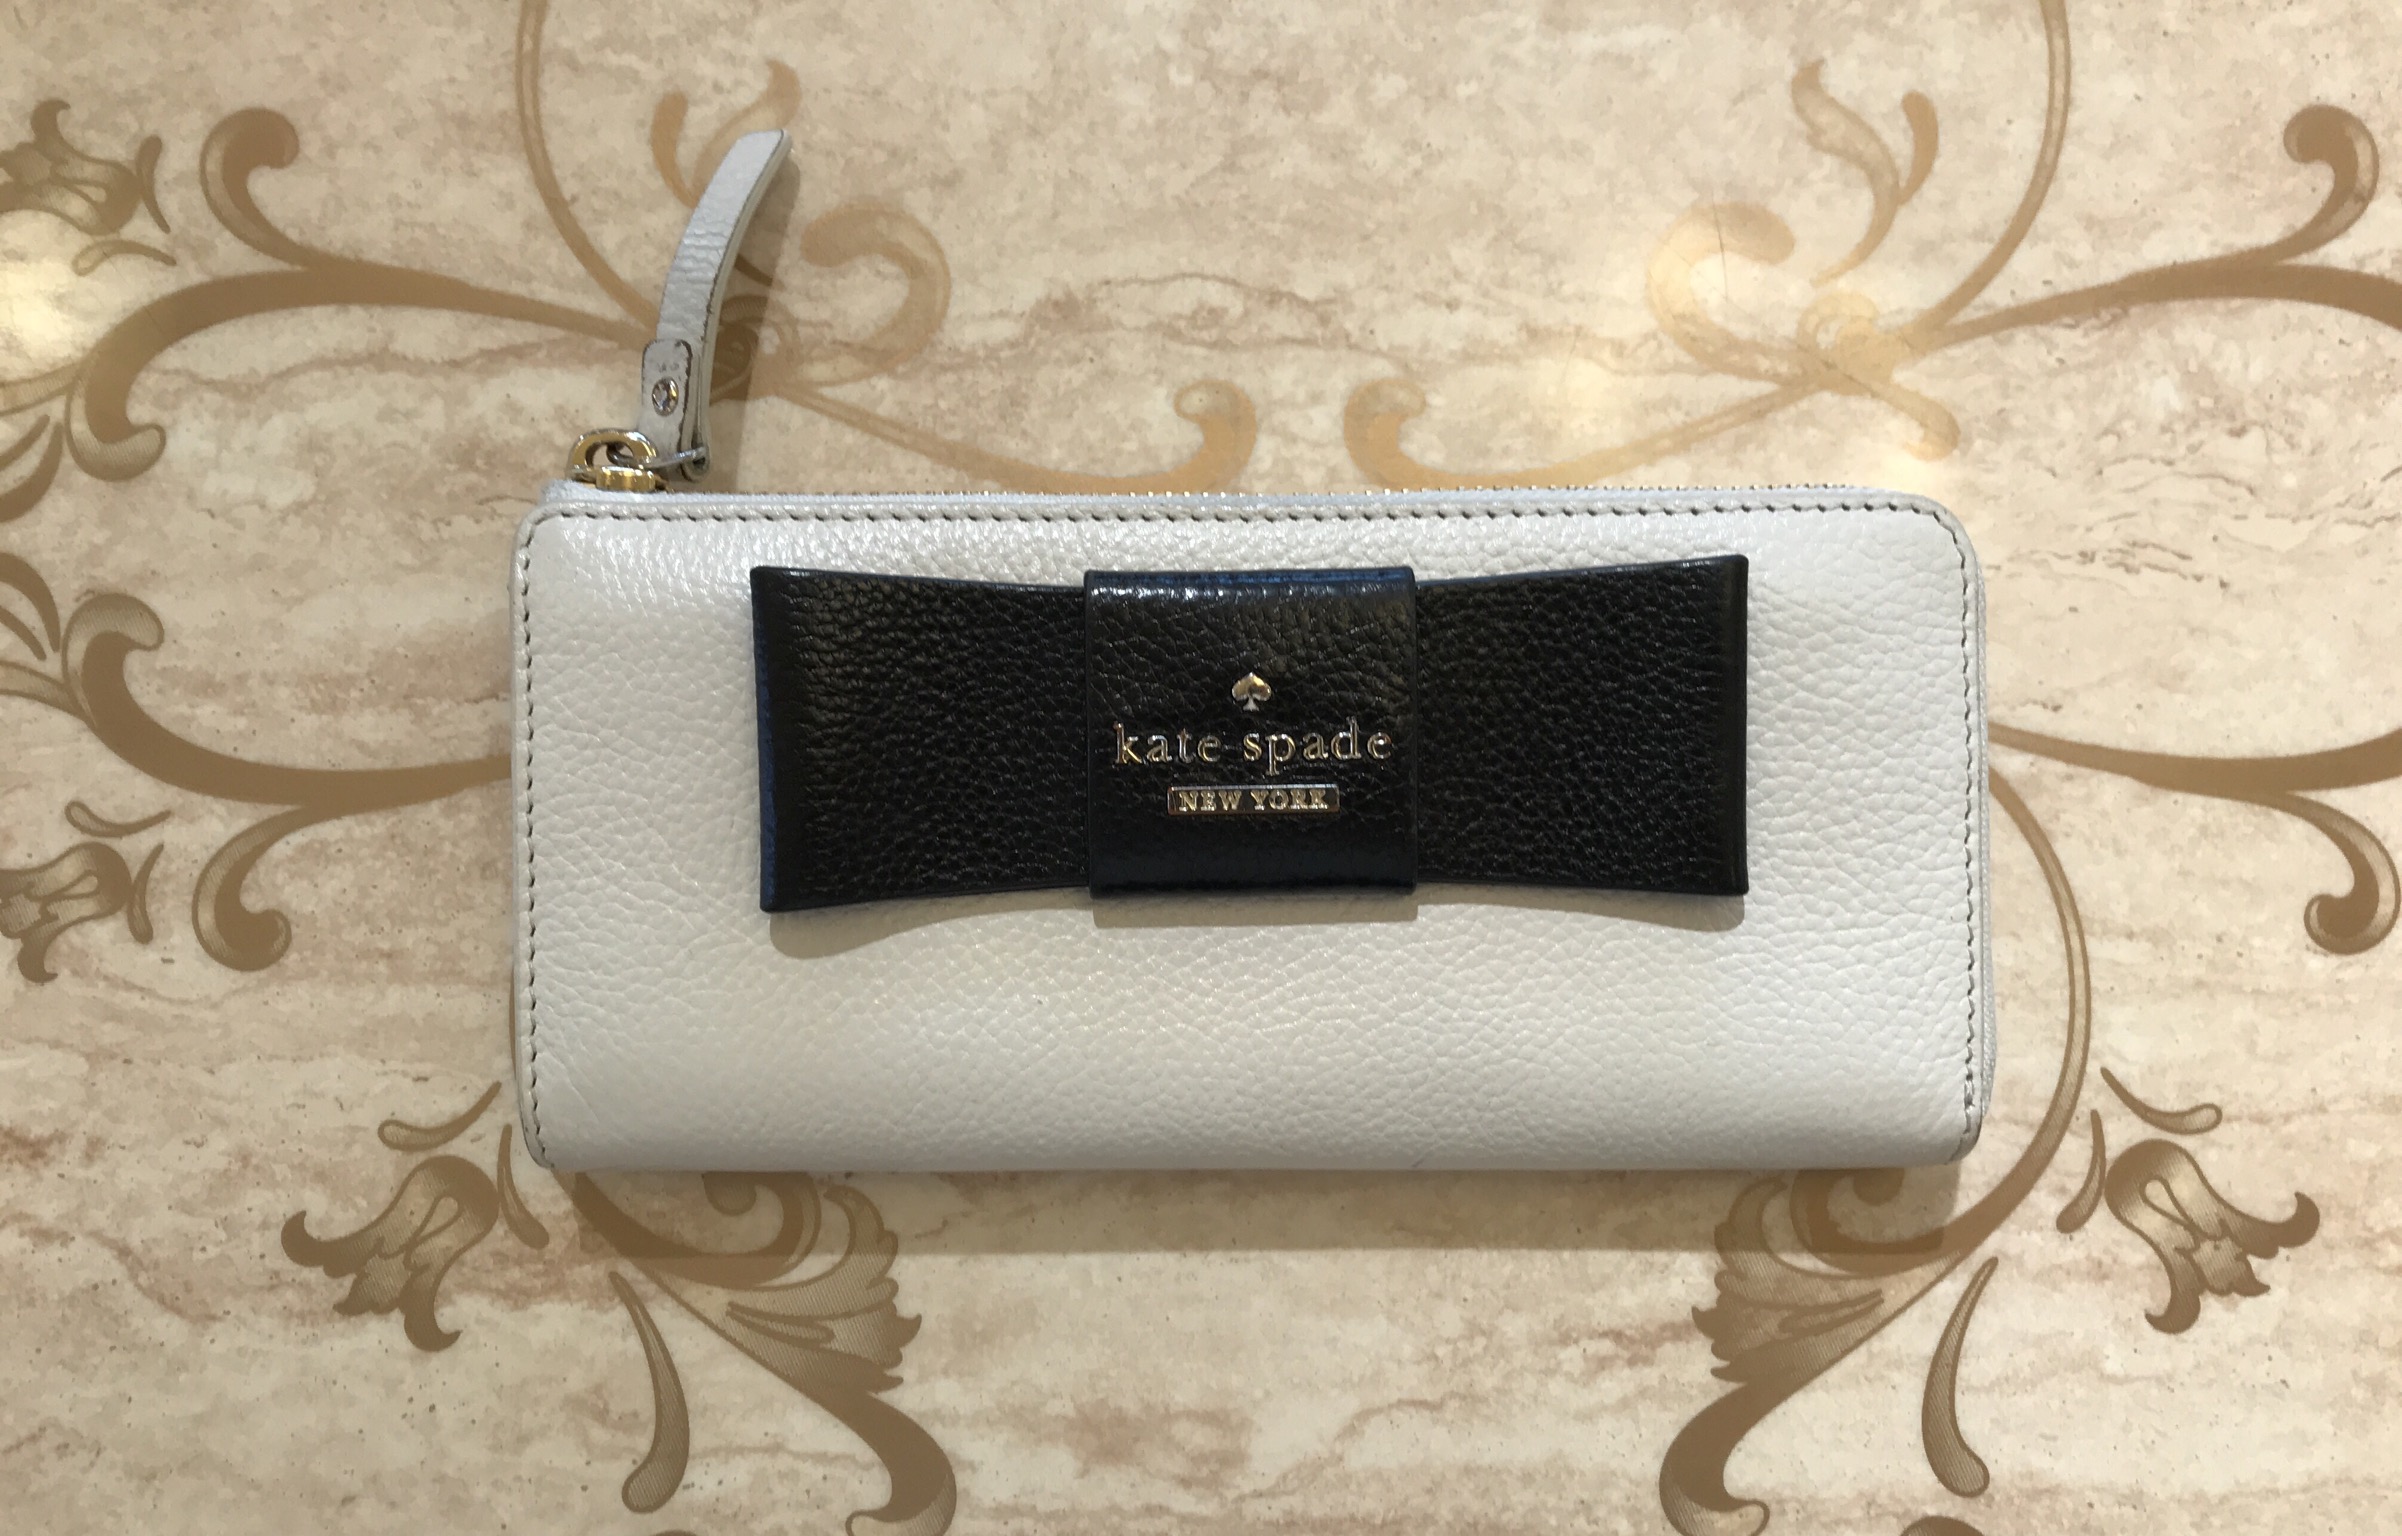 【買取速報】バッグ・財布、ブランド財布、Kate spade